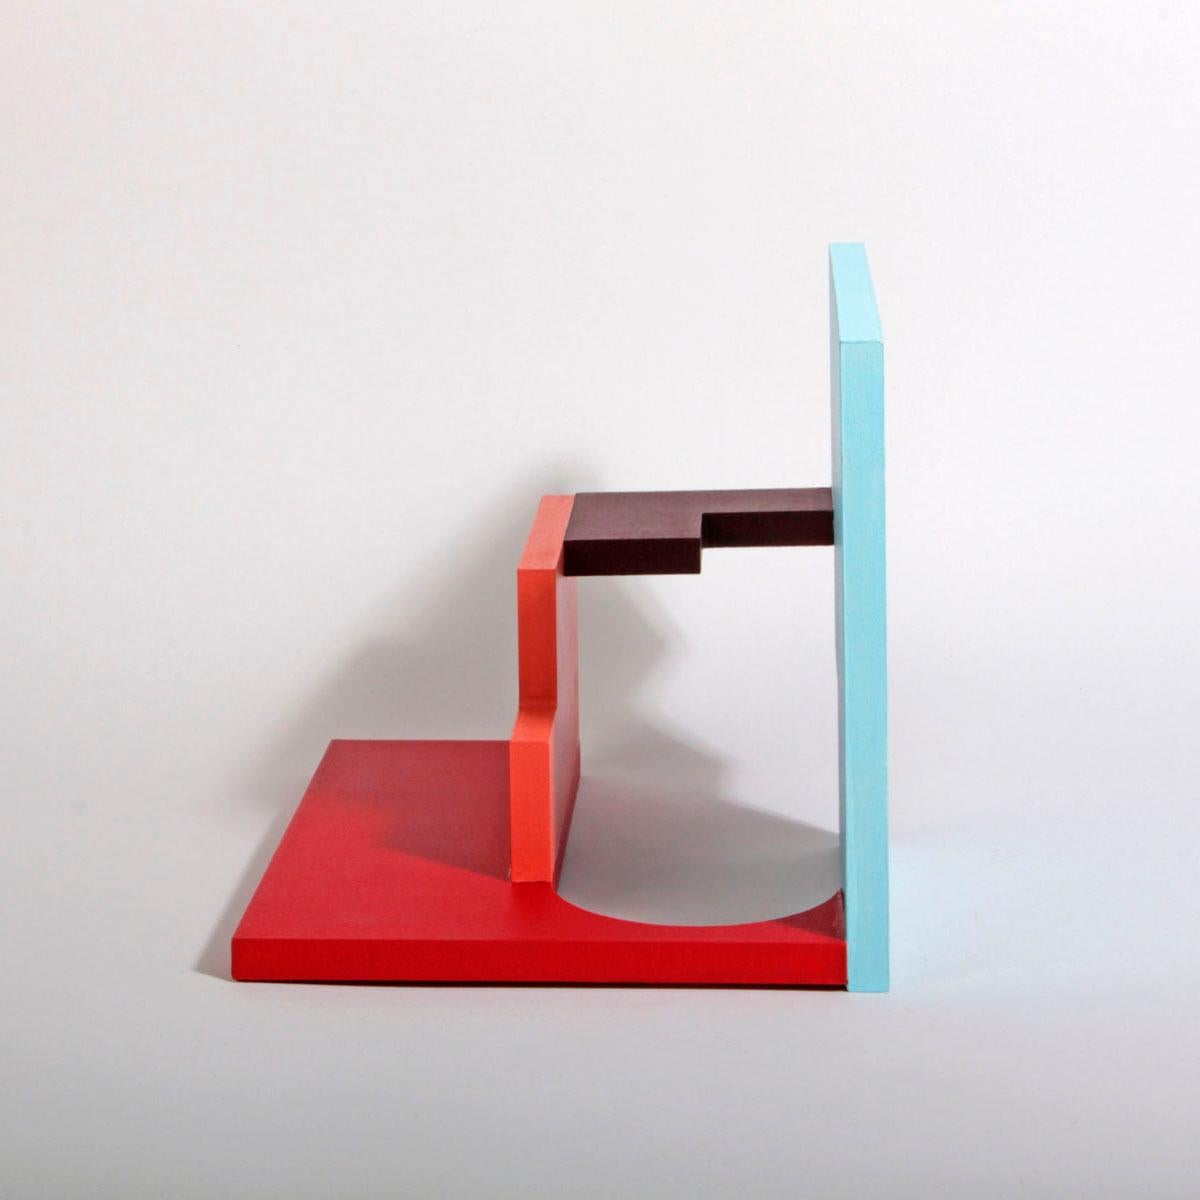 Oía - Abstract, Sculpture, Architecture, Contemporary Art, Marina Esmeraldo 6